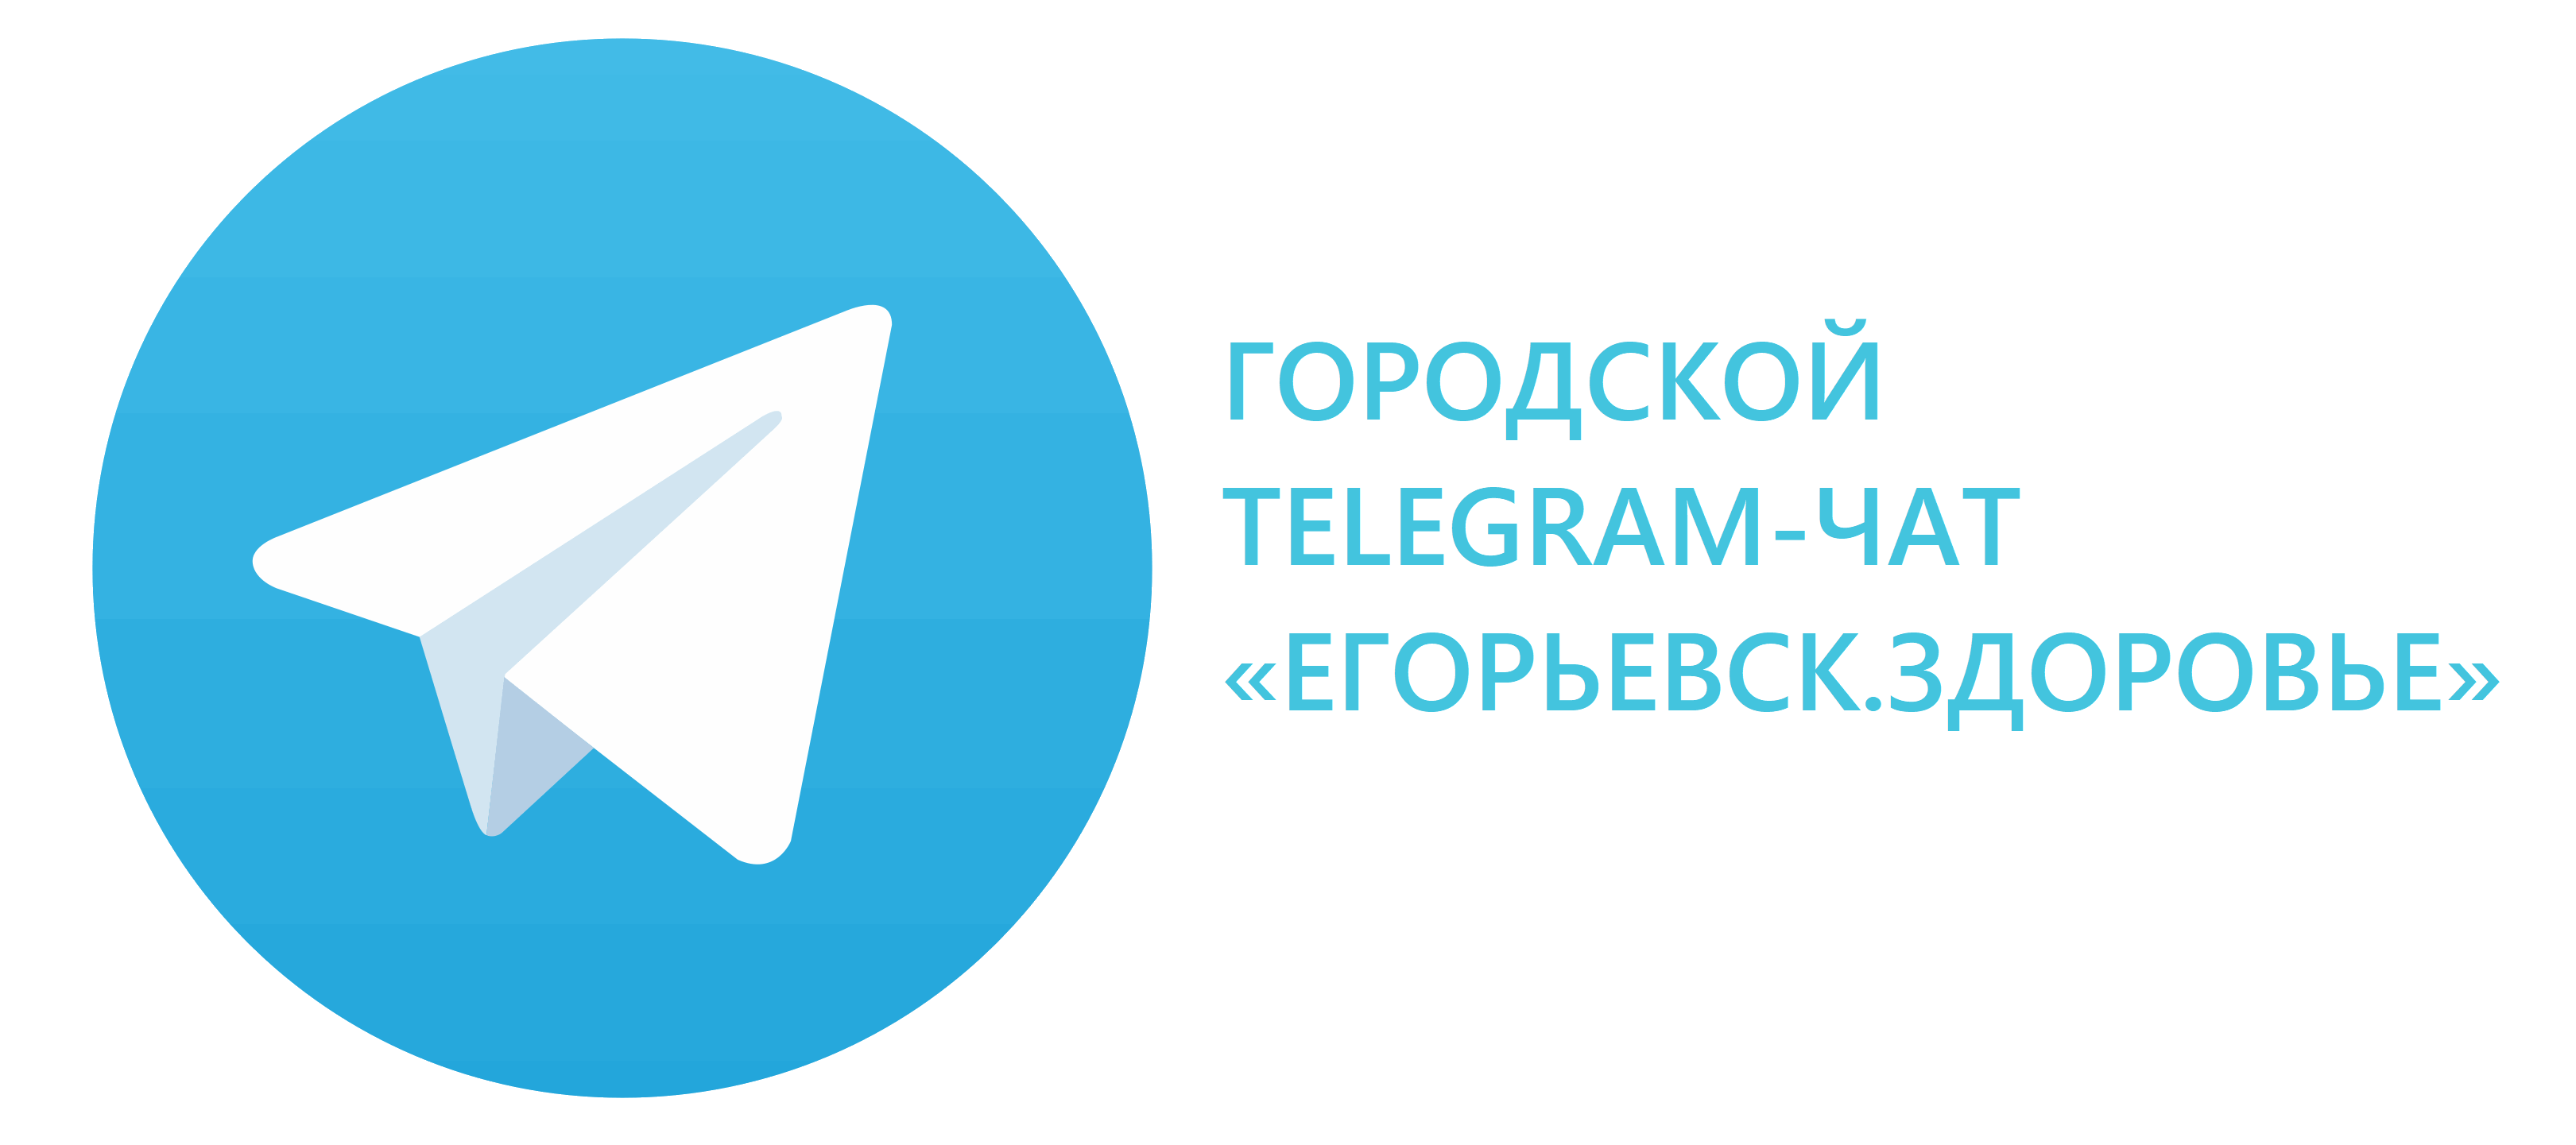 Переход в телеграм-чат Егорьевск.Здоровье